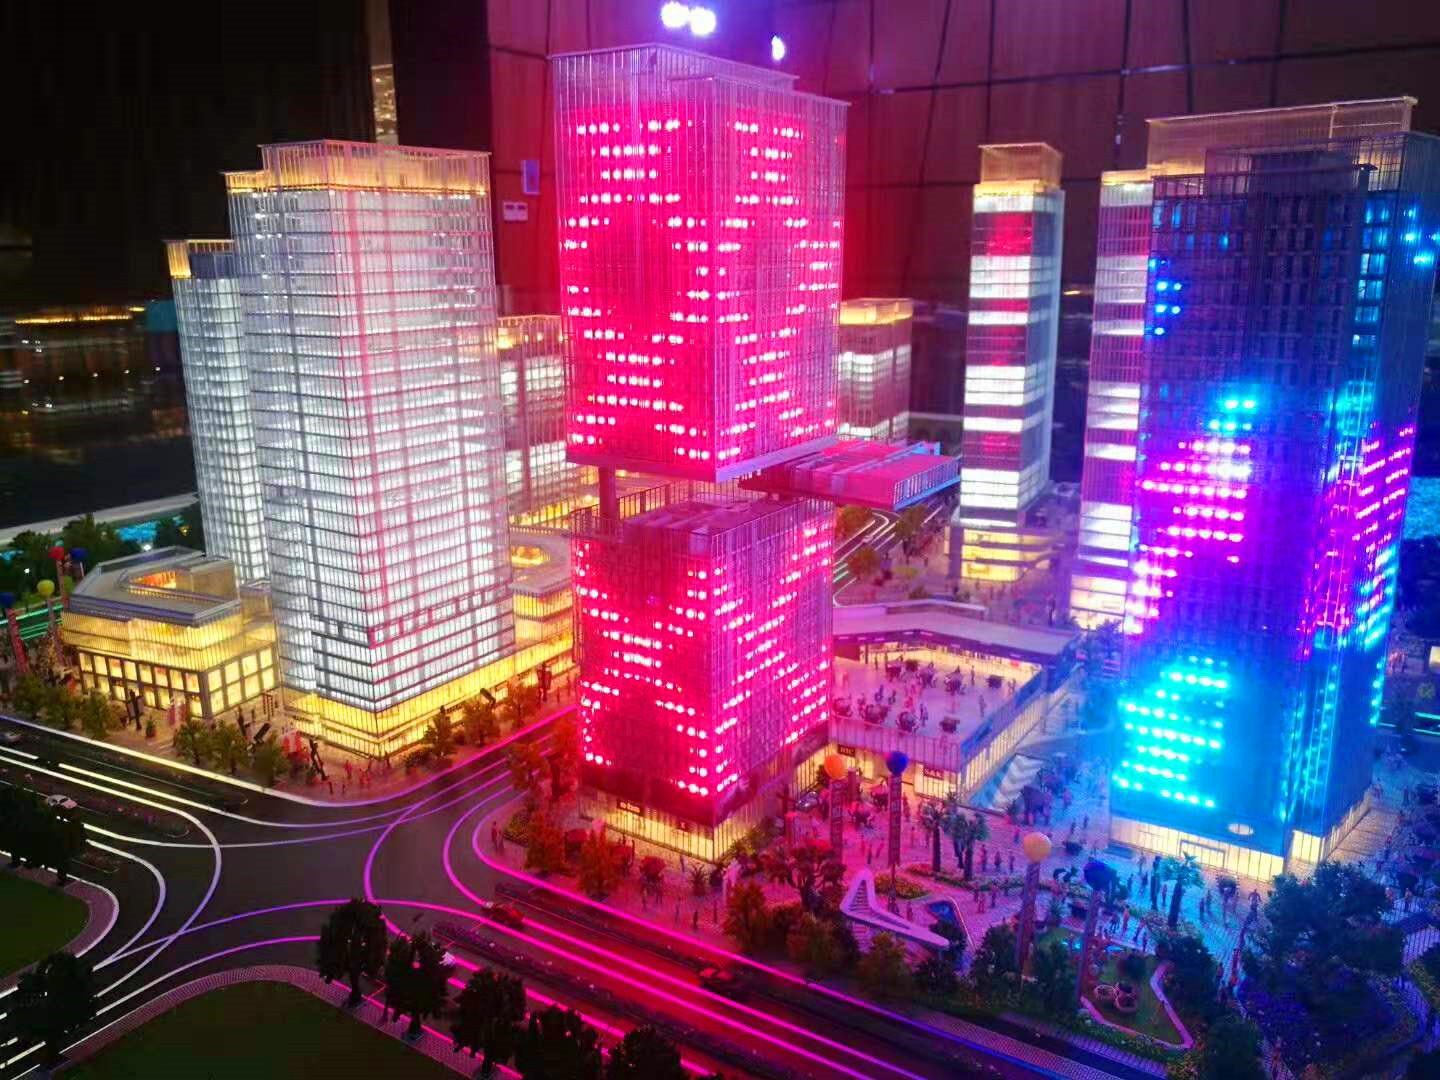 上海建筑模型公司